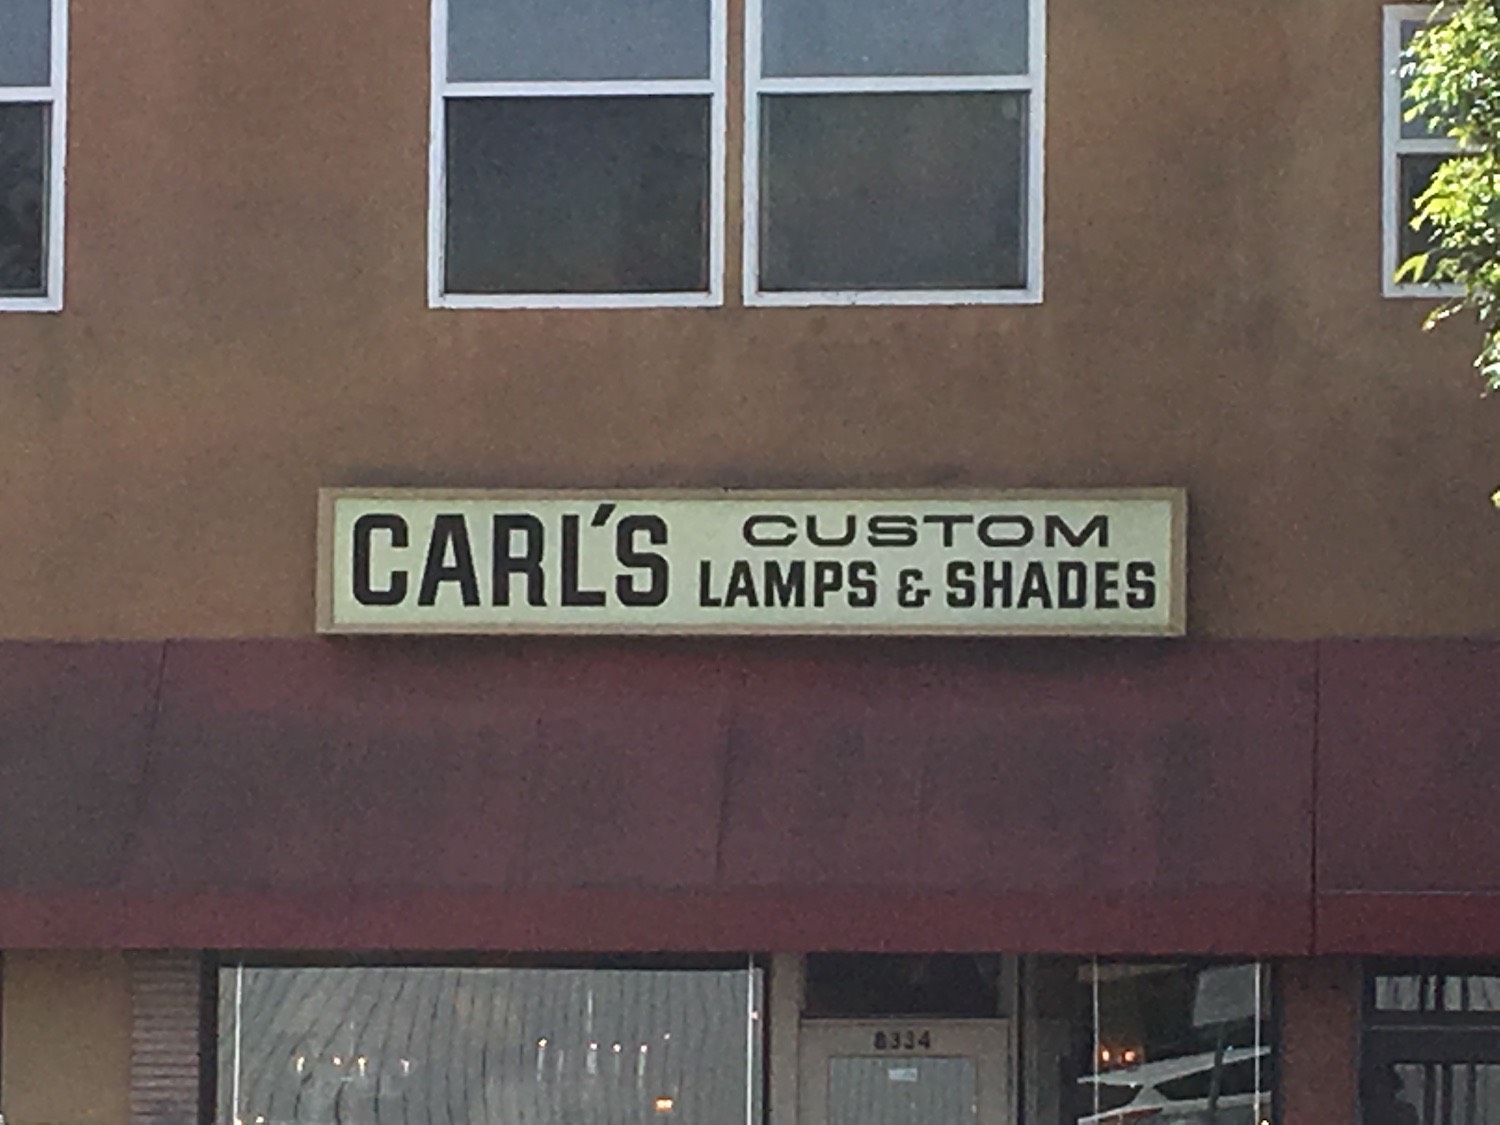 Carl's Custom Lamps & Shades